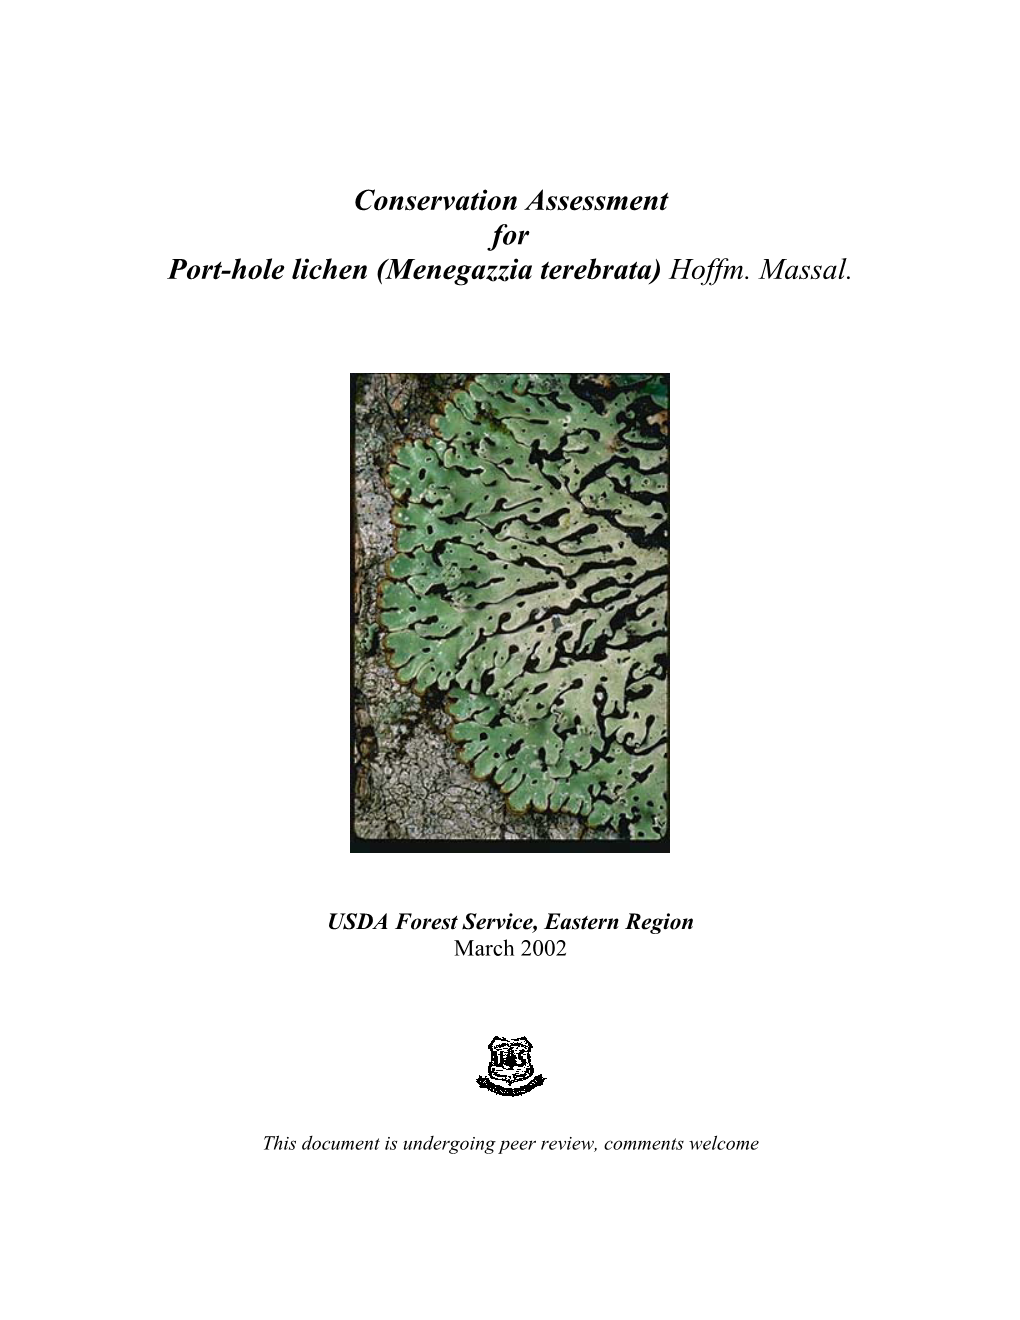 Conservation Assessment for Port-Hole Lichen (Menegazzia Terebrata) Hoffm